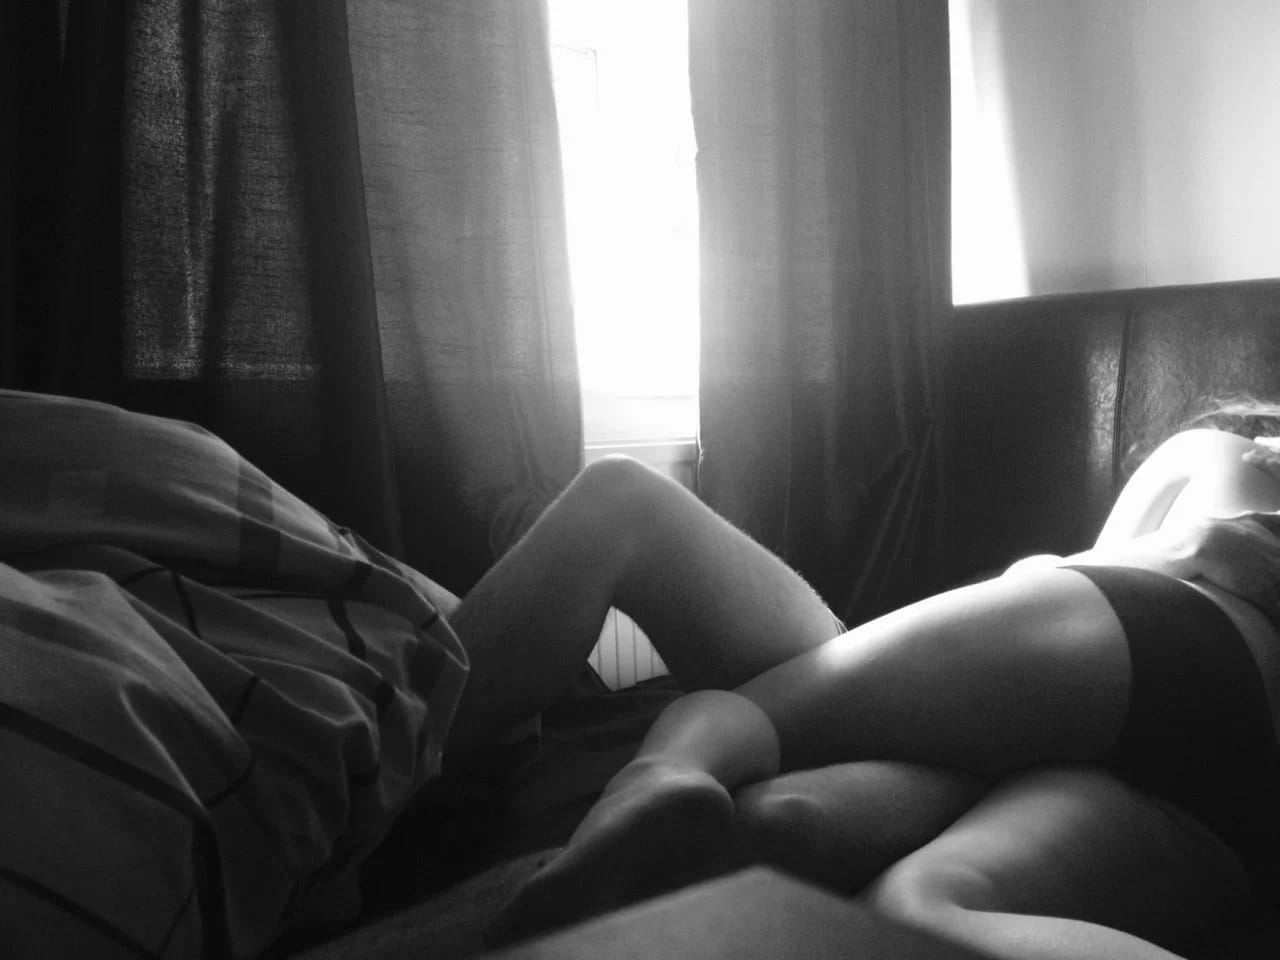  Симптичную проститутку азиаточку выпороли в гостиничном номере порно фото и секс фотографии